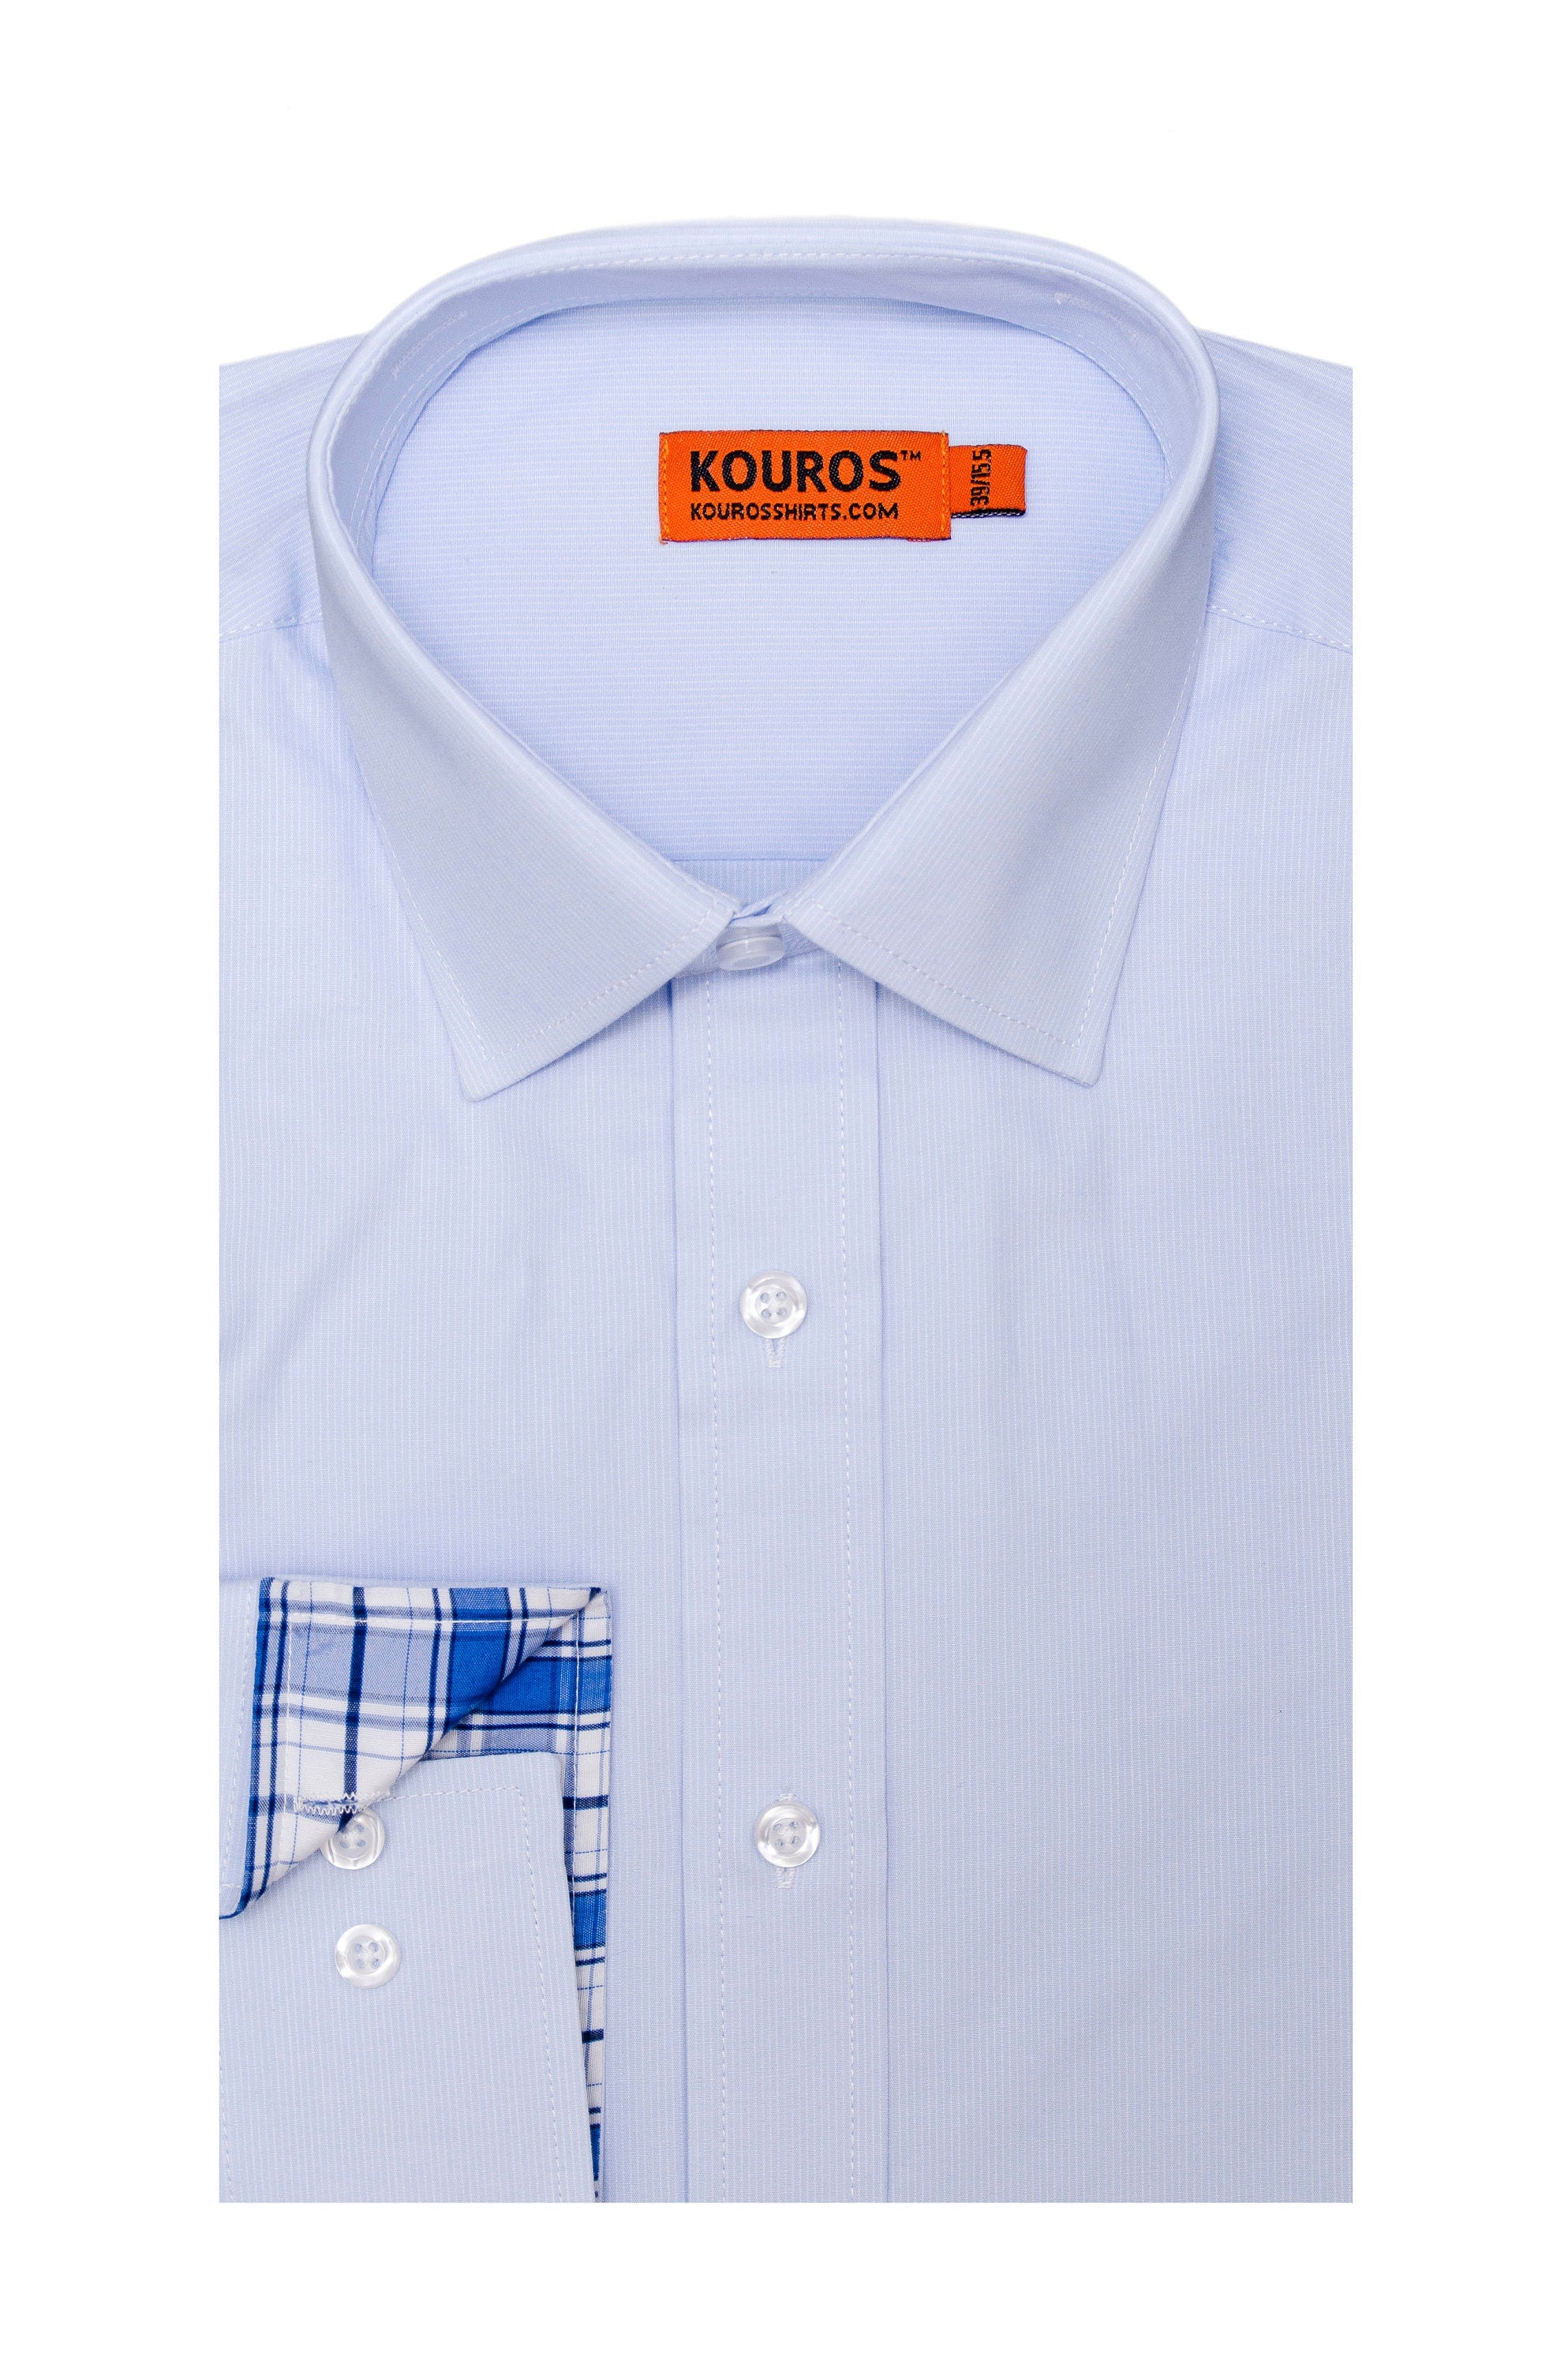 KOVROS Men's Premium Designer Dress Shirt, Light Blue | KOVROS